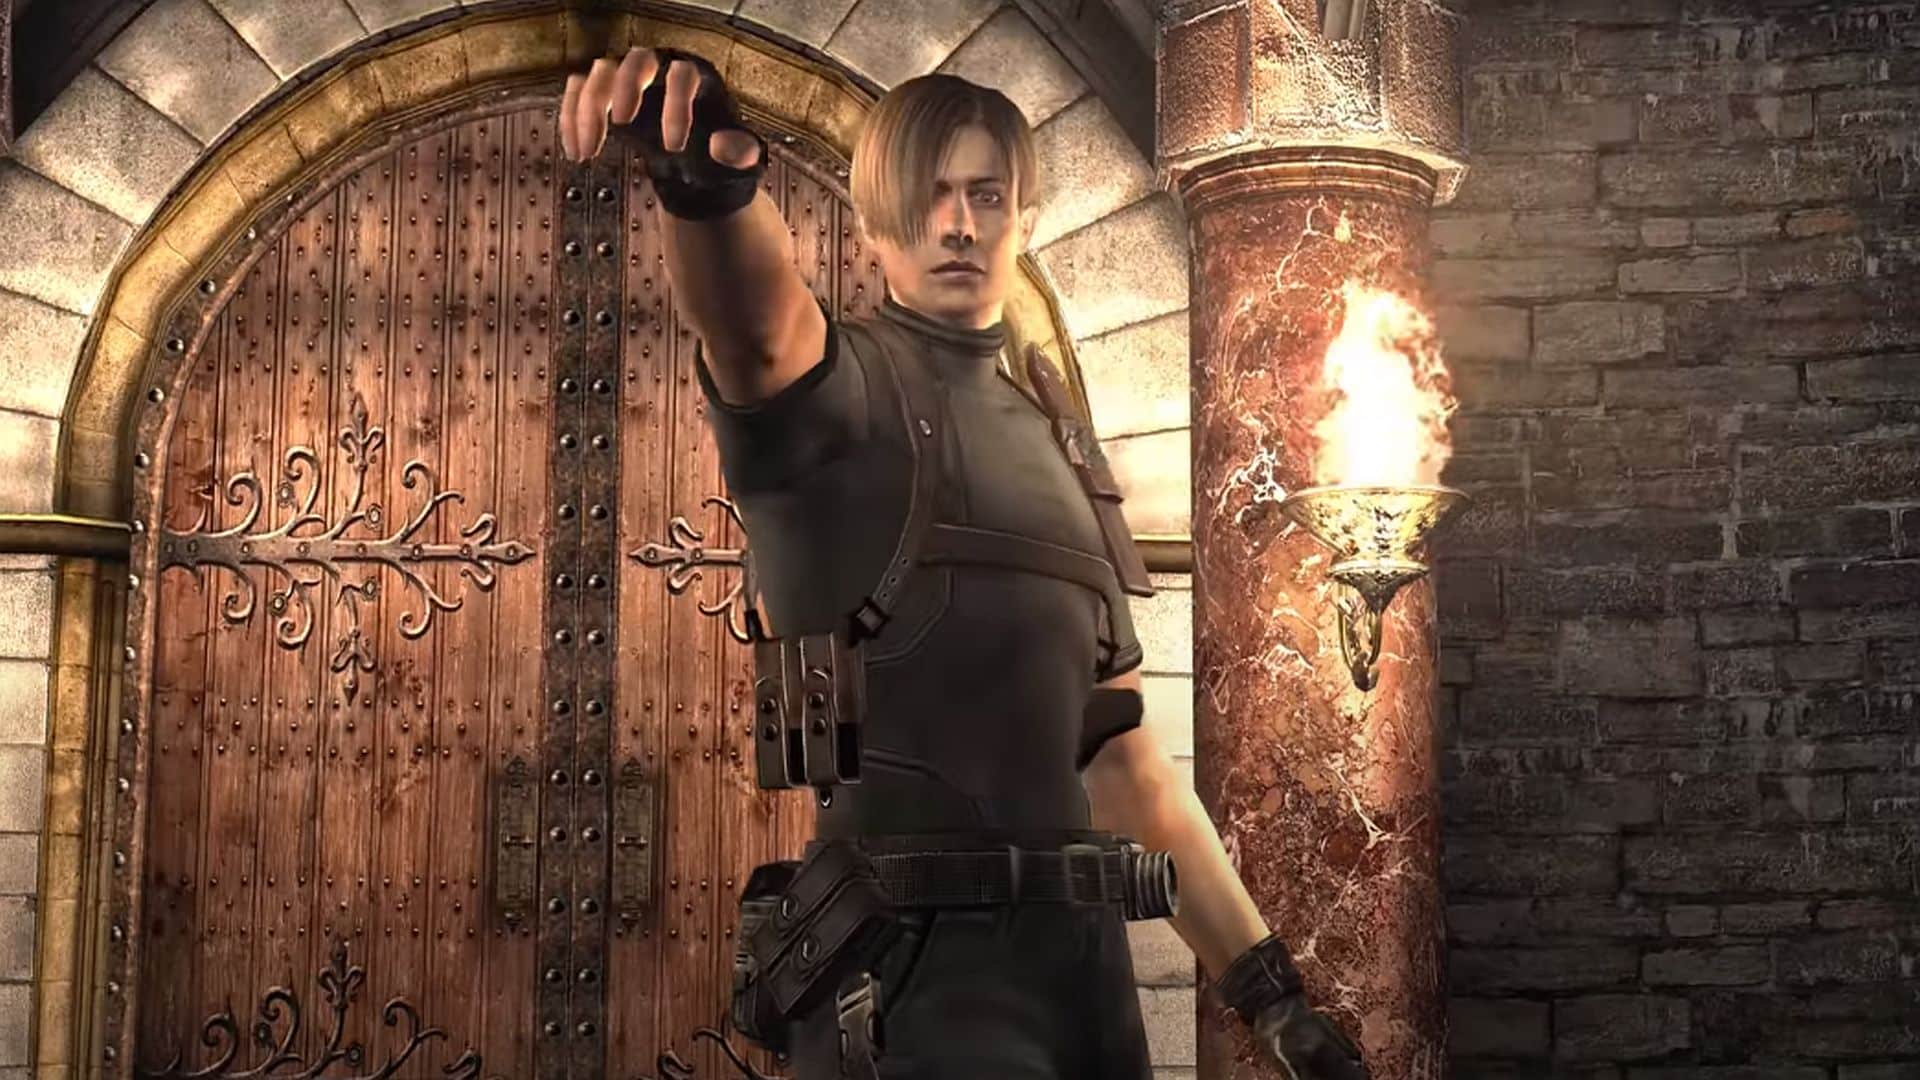 Resident Evil 4 Remake DLC Teased by Leaker